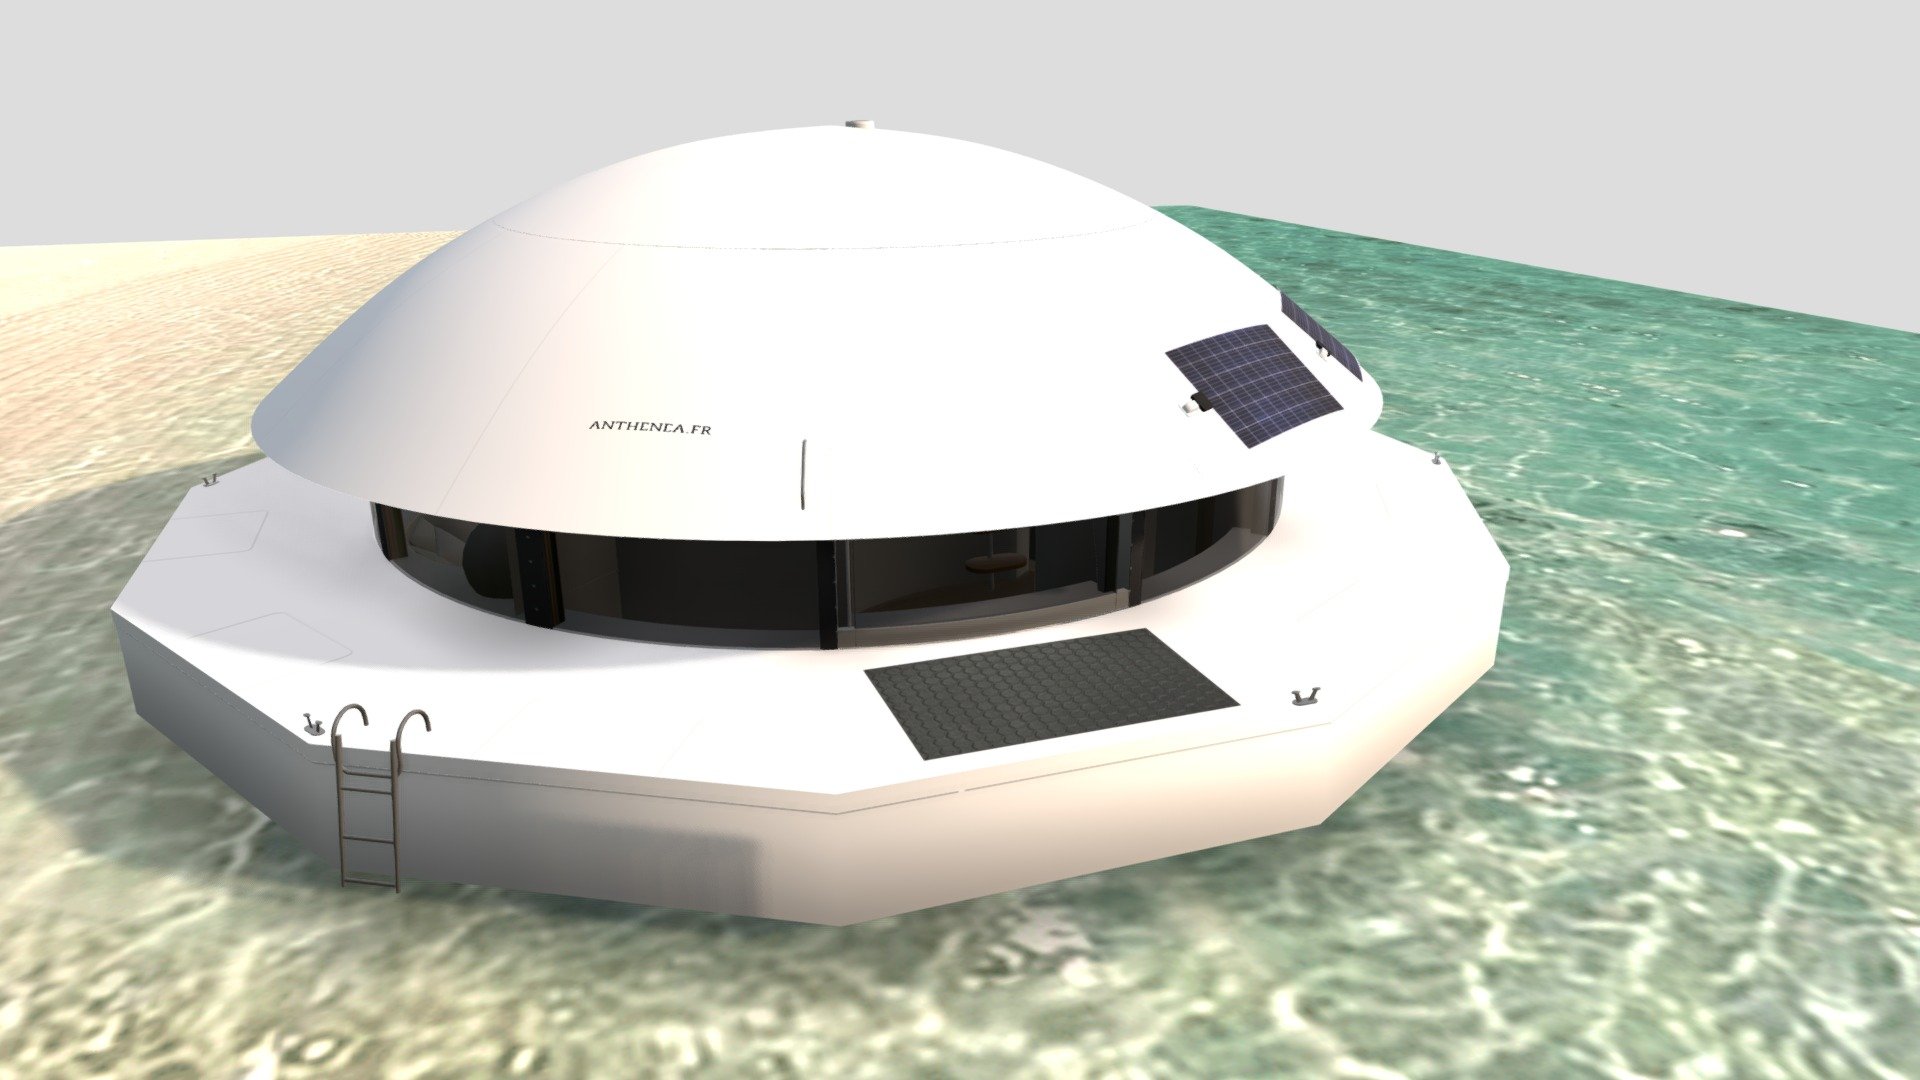 progress

https://www.anthenea.fr/en/anthenea/ - Anthenea smart floating space - Buy Royalty Free 3D model by paperscan 3d model